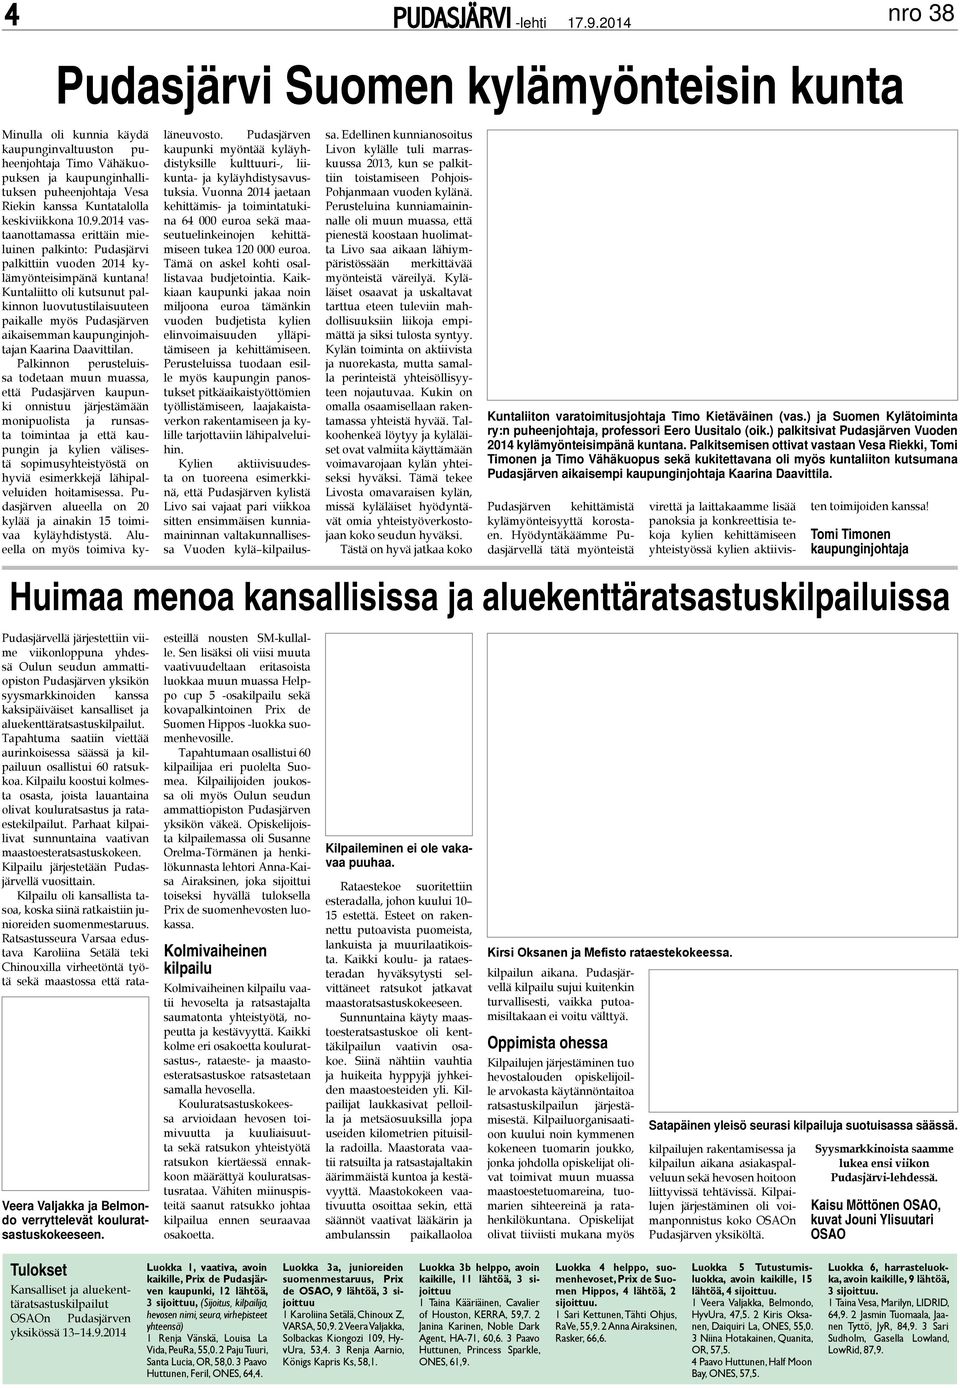 Kuntaliitto oli kutsunut palkinnon luovutustilaisuuteen paikalle myös Pudasjärven aikaisemman kaupunginjohtajan Kaarina Daavittilan.